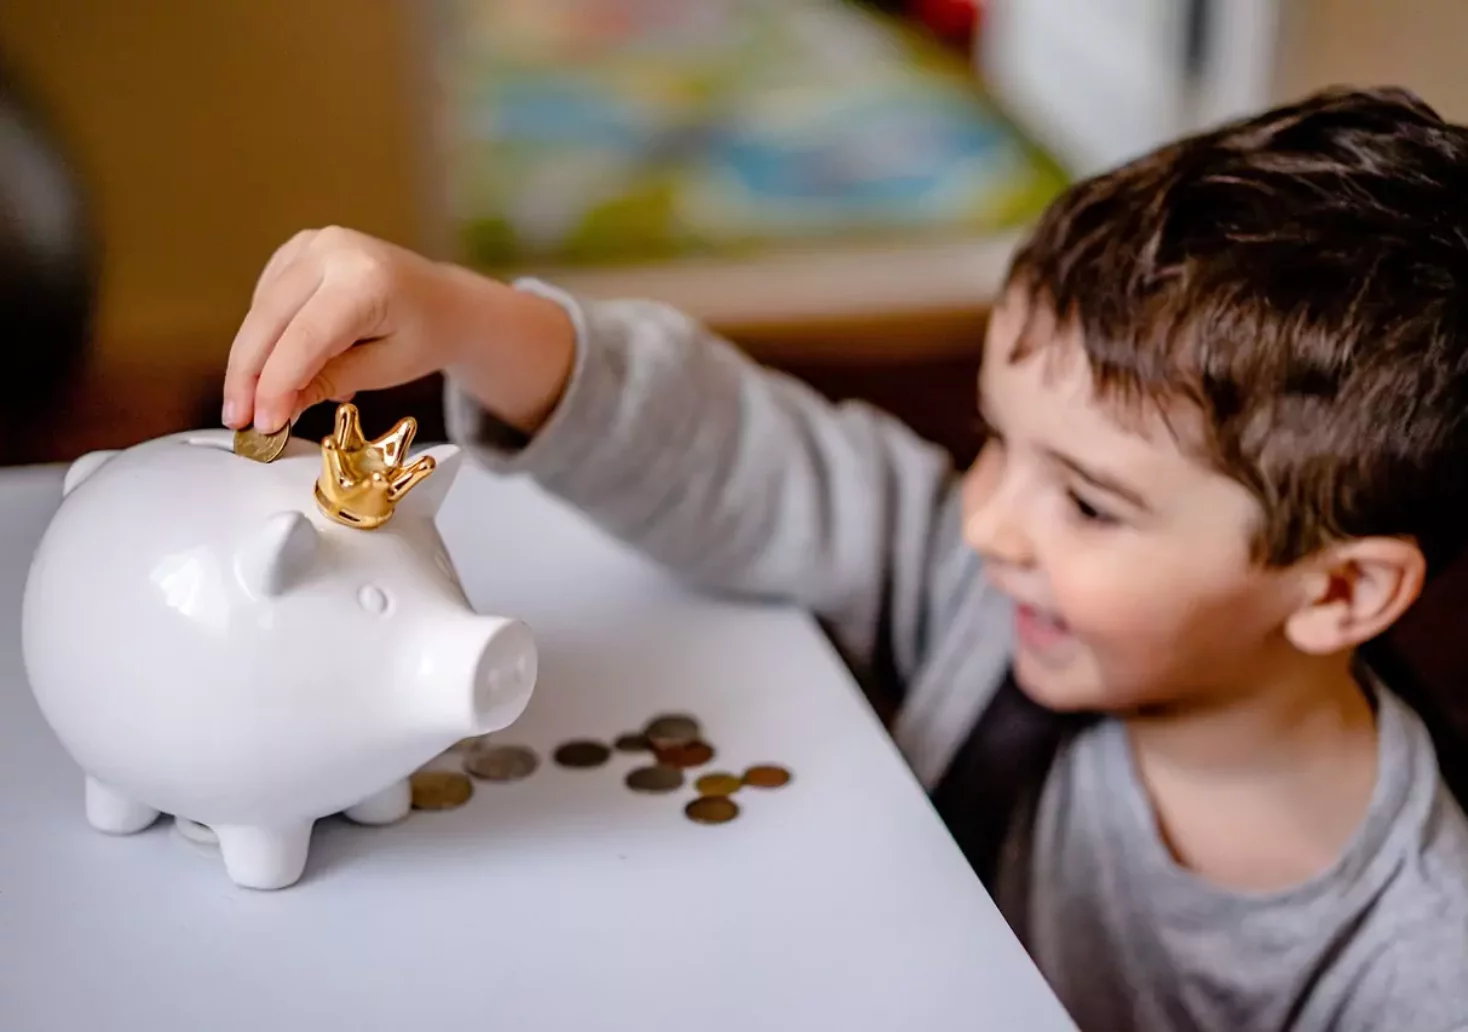 Foto auf 5min.at zeigt ein Kind, welches Geldmünzen in ein Sparschwein gibt.